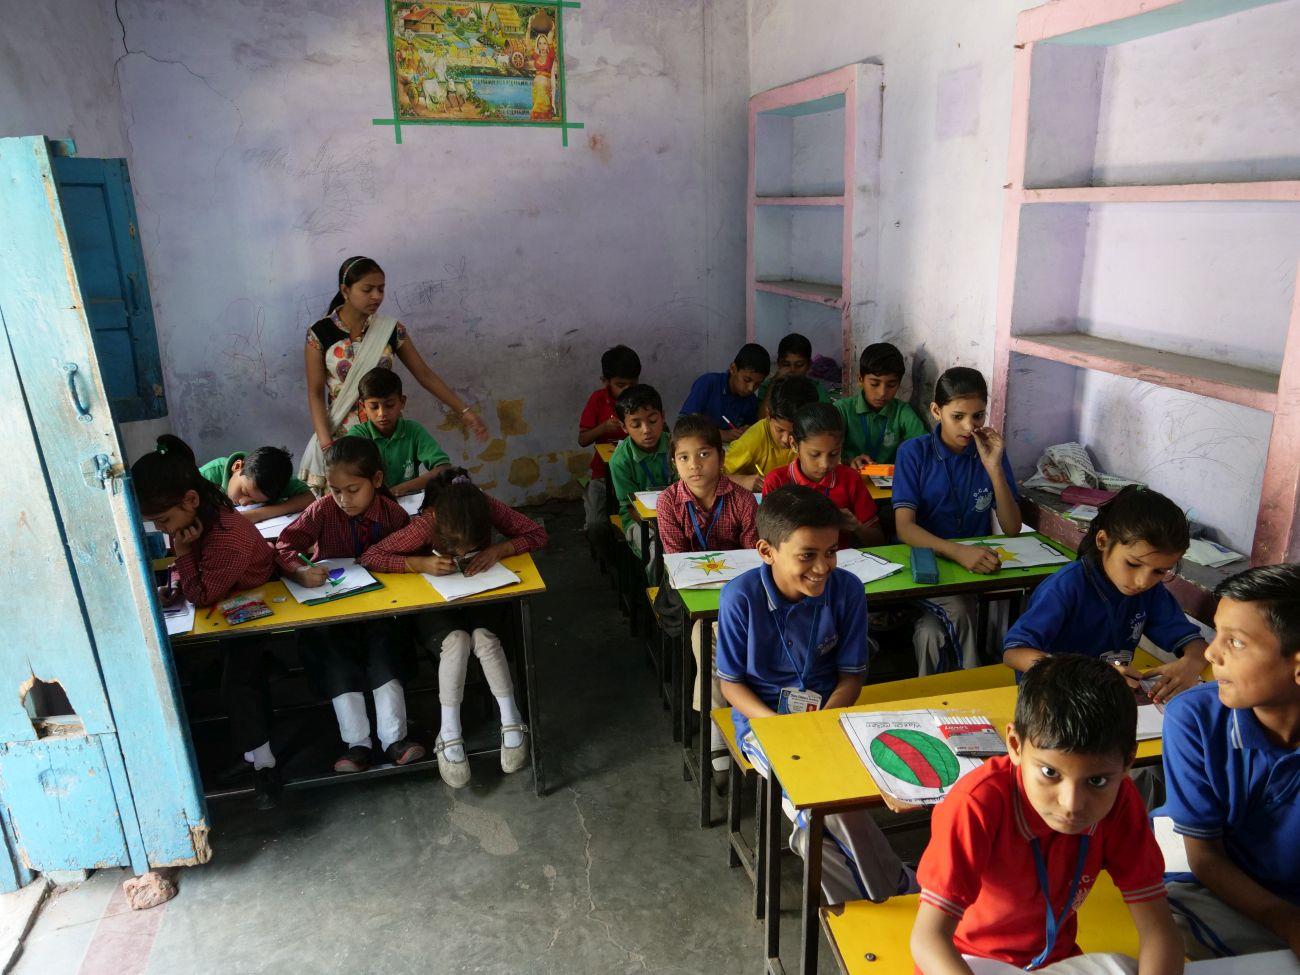 Indische Kinder lernern auf engstem Raum